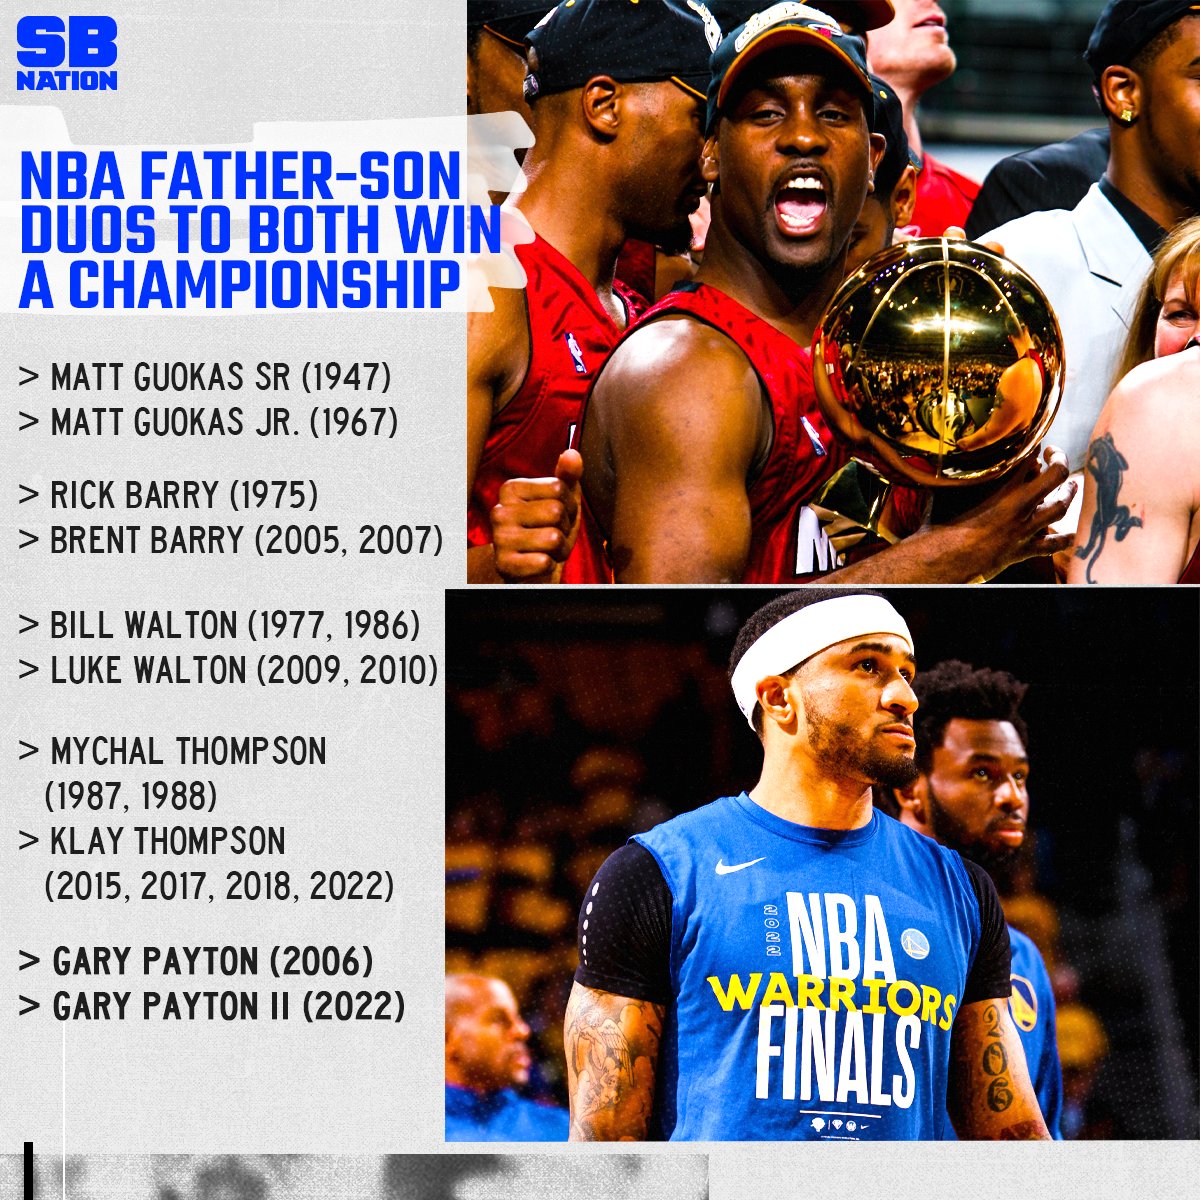 薪火相传！佩顿父子成第5对均赢得NBA总冠军的父子档